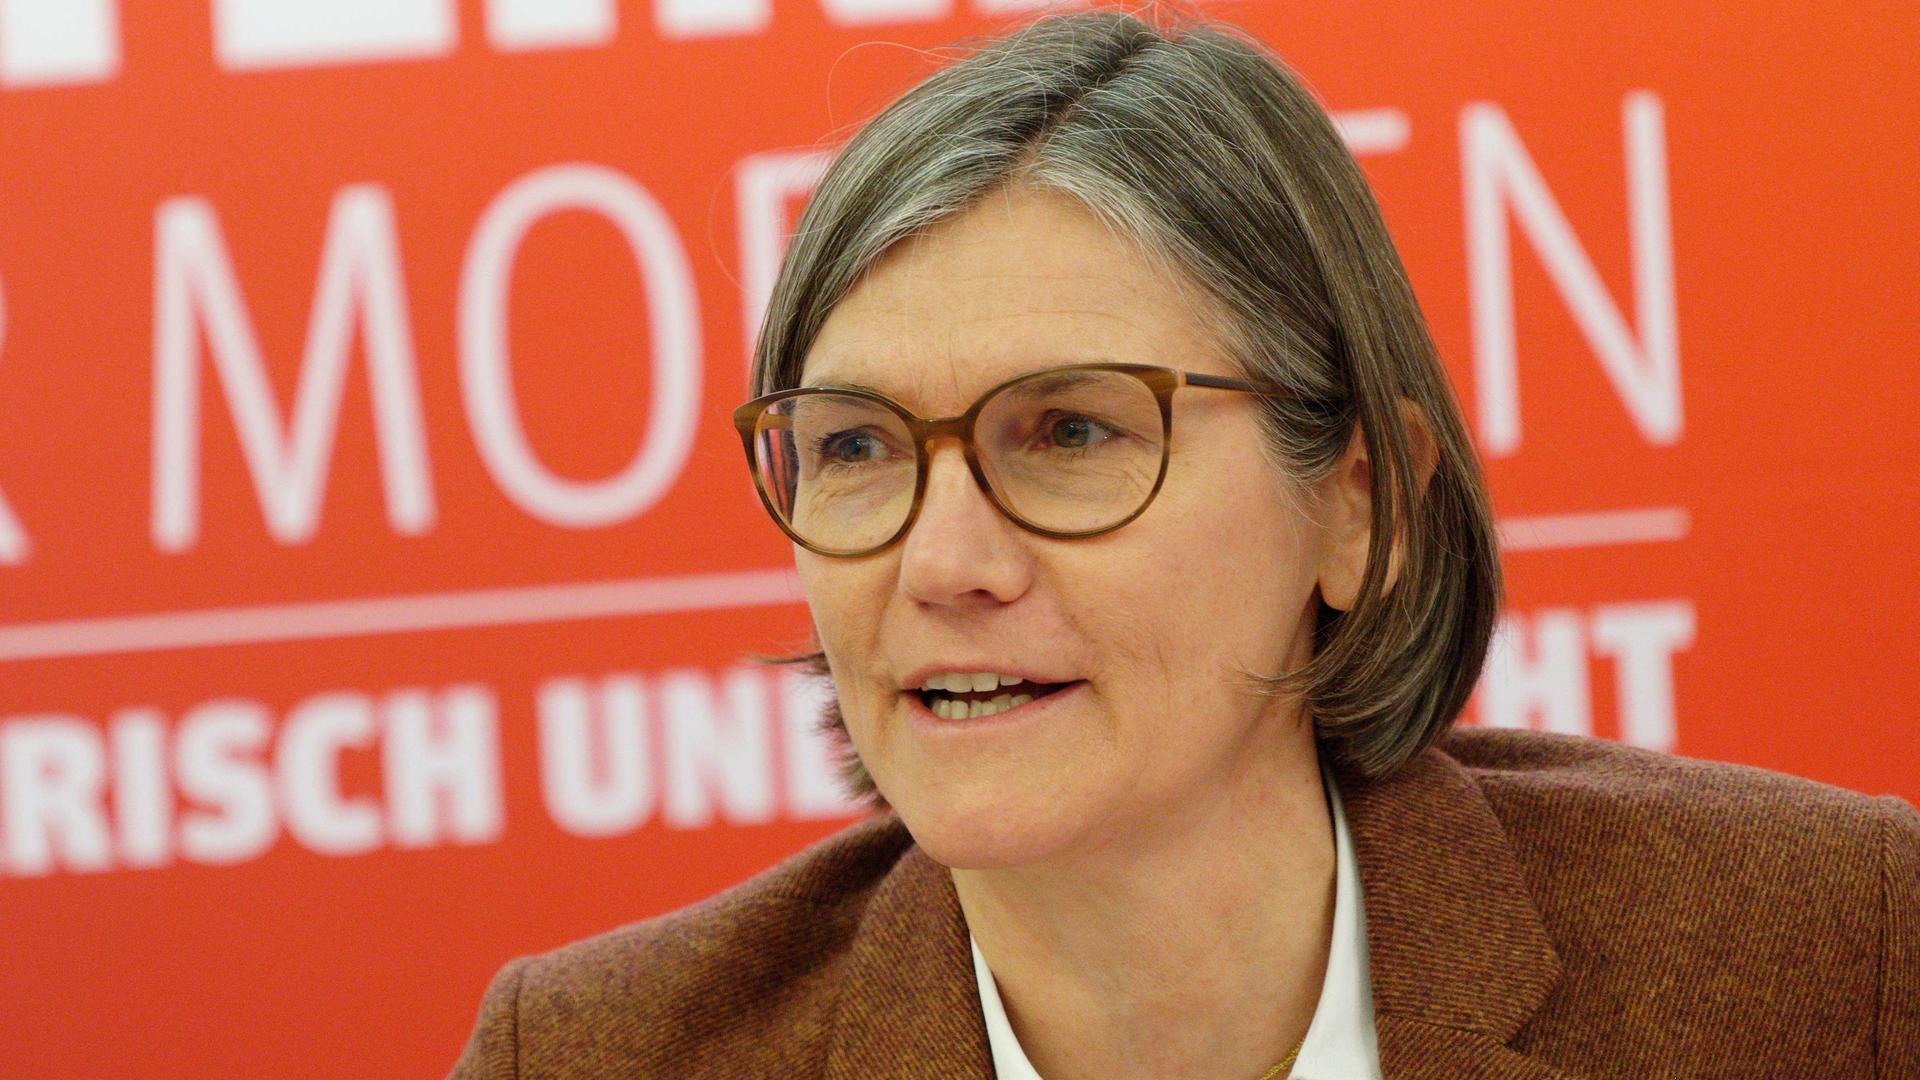 Christiane Benner, zweite Vorsitzende der IG-Metall, will sich zur Gewerkschaftsvorsitzenden wählen lassen.